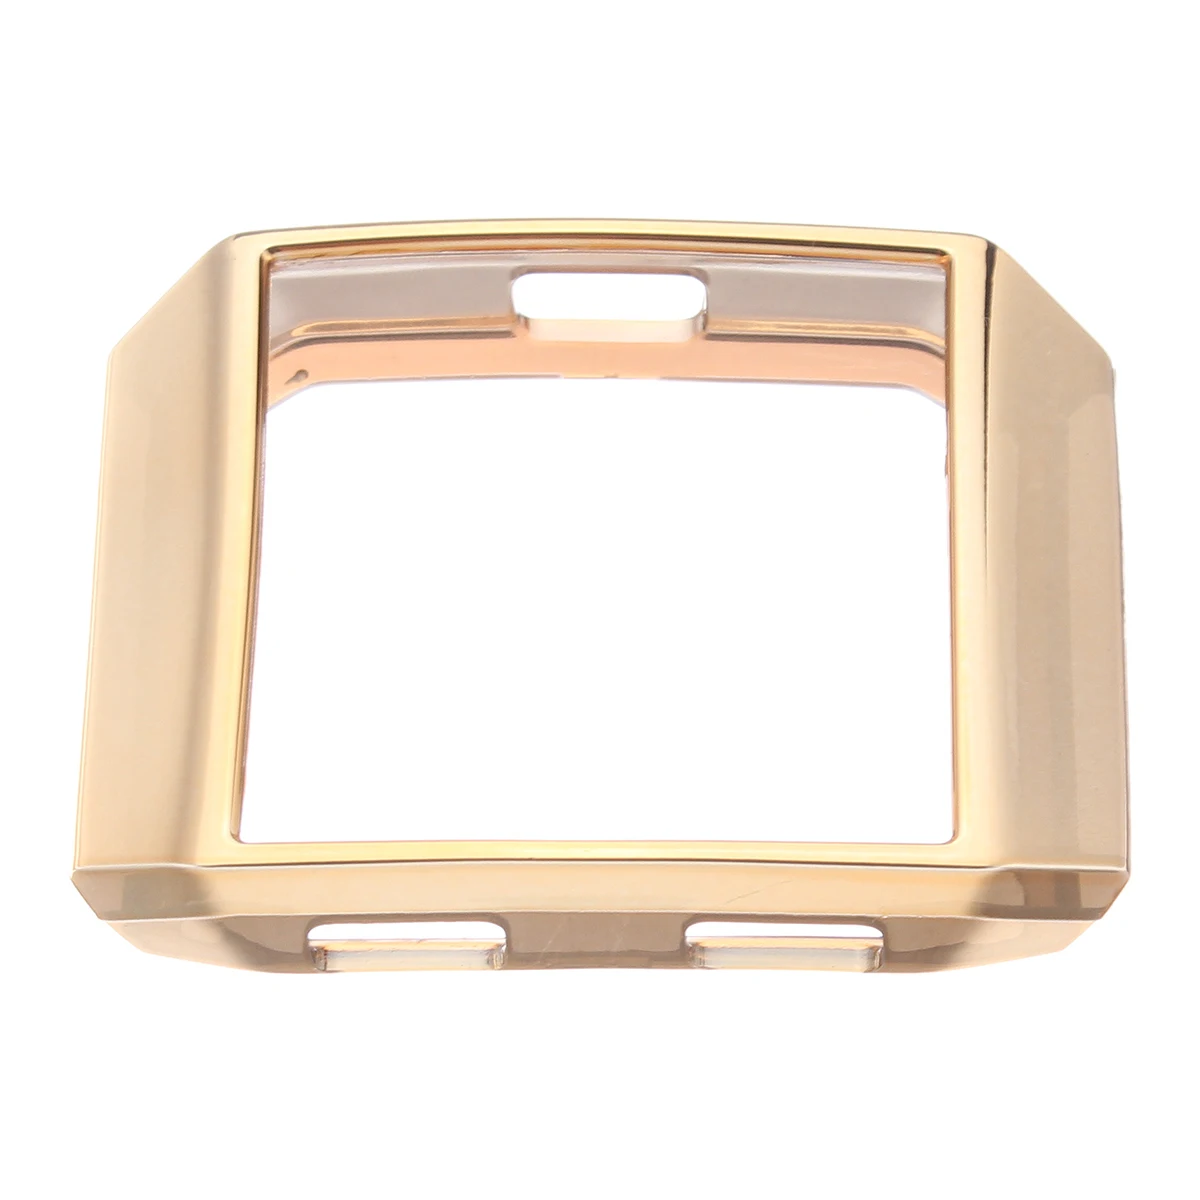 KINCO Силиконовые Мягкий ТПУ Резиновая Рамка кожи Shell Обложка Защитный Чехол для Fitbit ионной Смарт-часы Экран протектор Аксессуары - Цвет: Gold